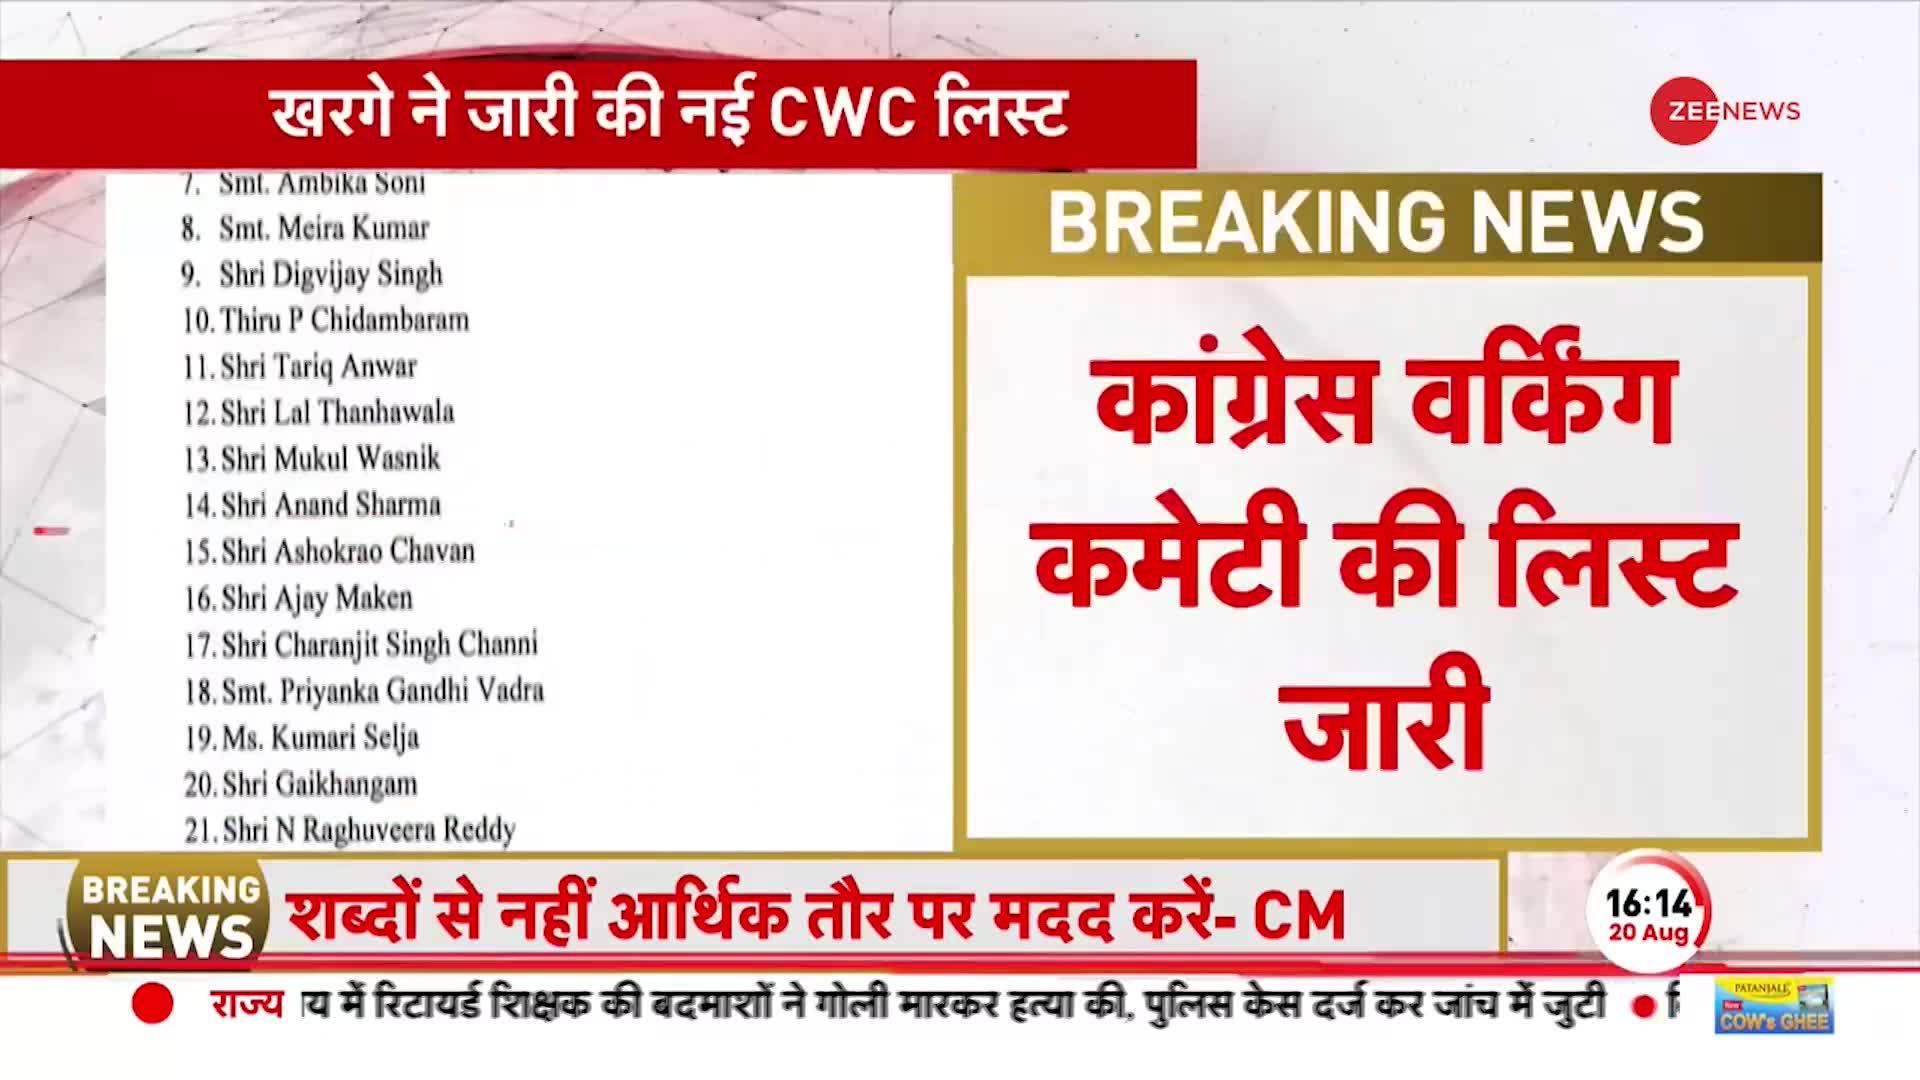 Congress Breaking: CWC की लिस्ट जारी, लिस्ट में पायलट और प्रियंका गांधी के नाम शामिल